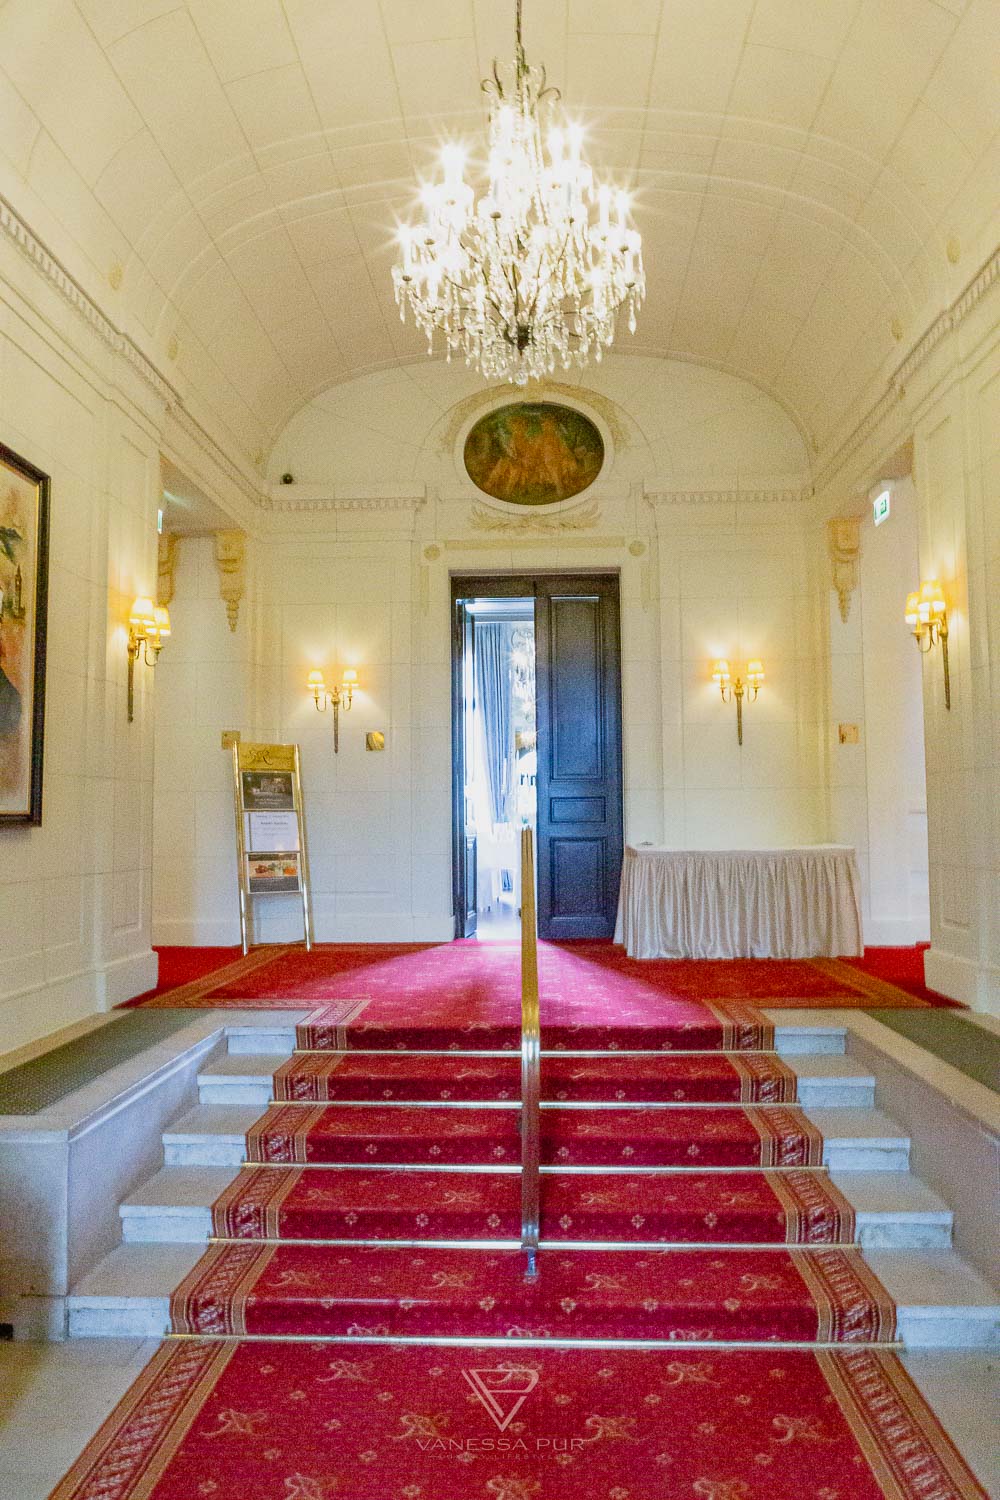 Villa Rothschild Frankfurt - Kempinski Hotel Königstein Taunus Mountains - luxury hotel near Frankfurt - recreation with style